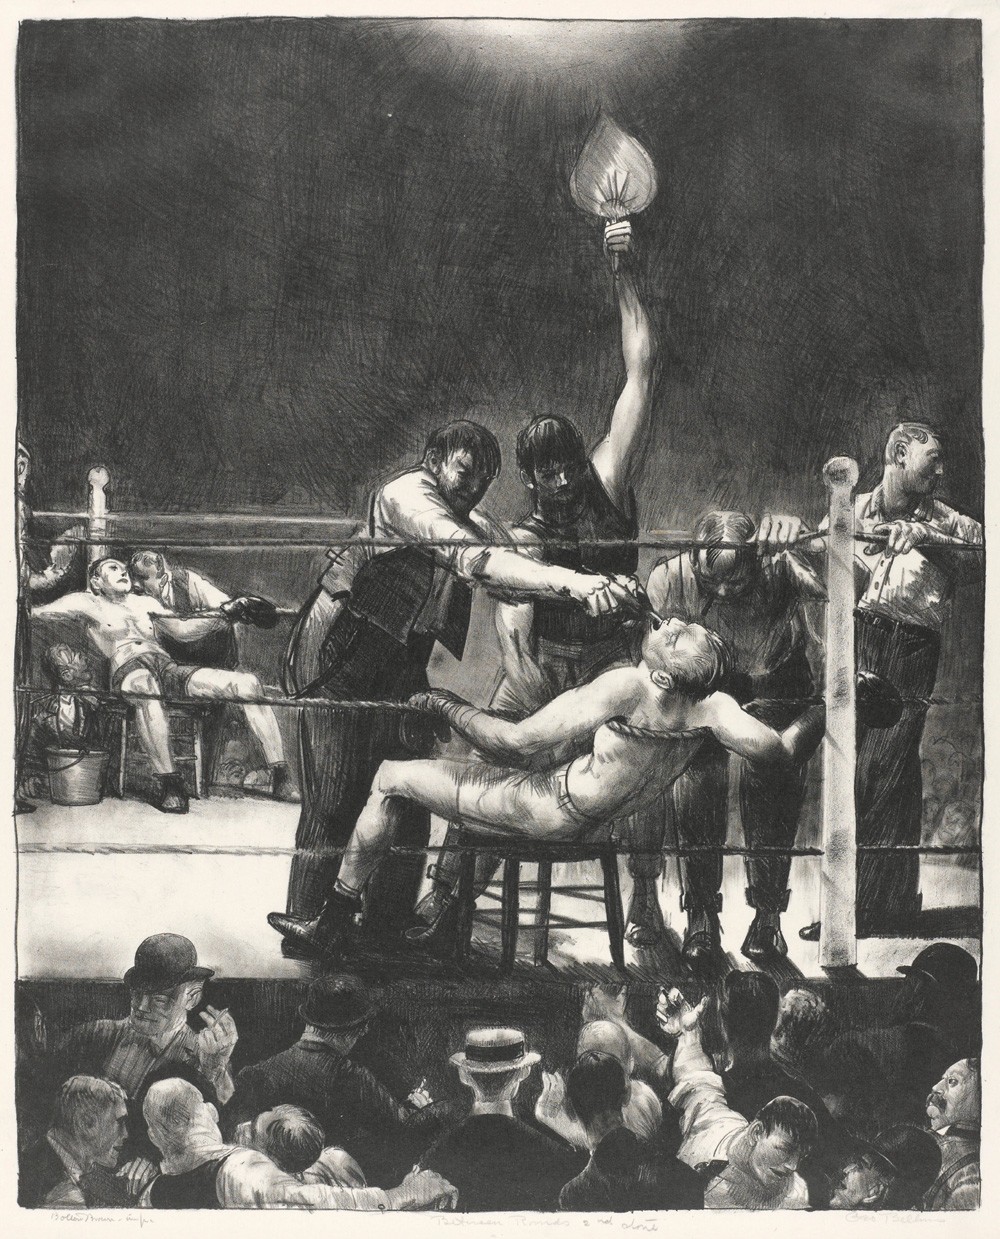 Foto 1 - Luta de Boxe Intervalo Assaltos Rounds Pugilistas Sentados no Canto do Ringue Esporte Pintura de George Bellows em TELA 